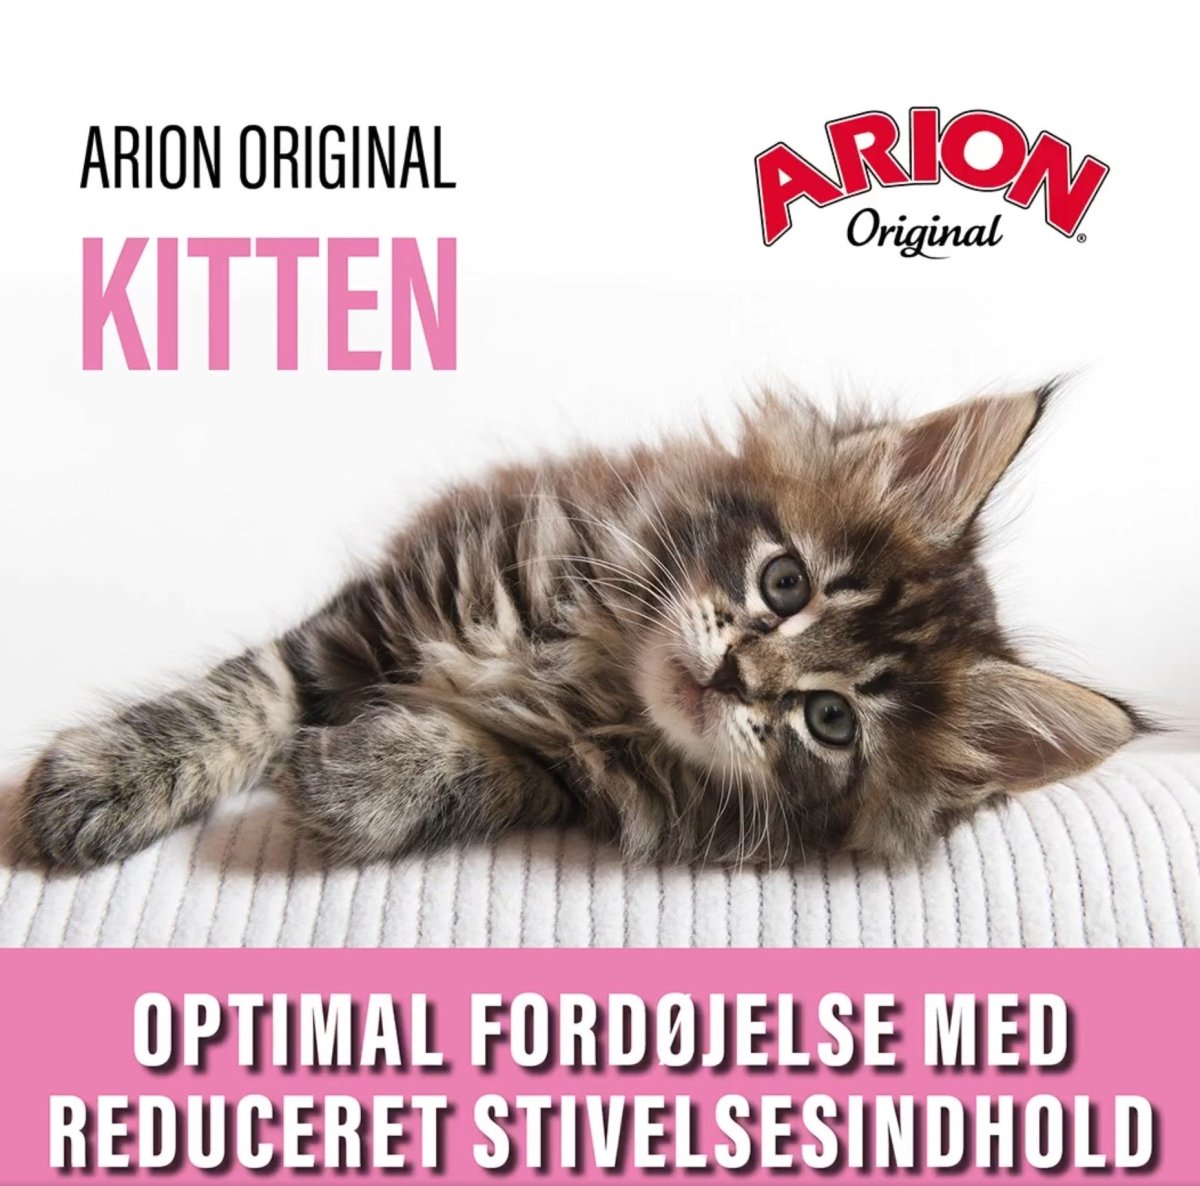 Arion Original Cat Kitten 7,5 kg - animondo.dk - 105853